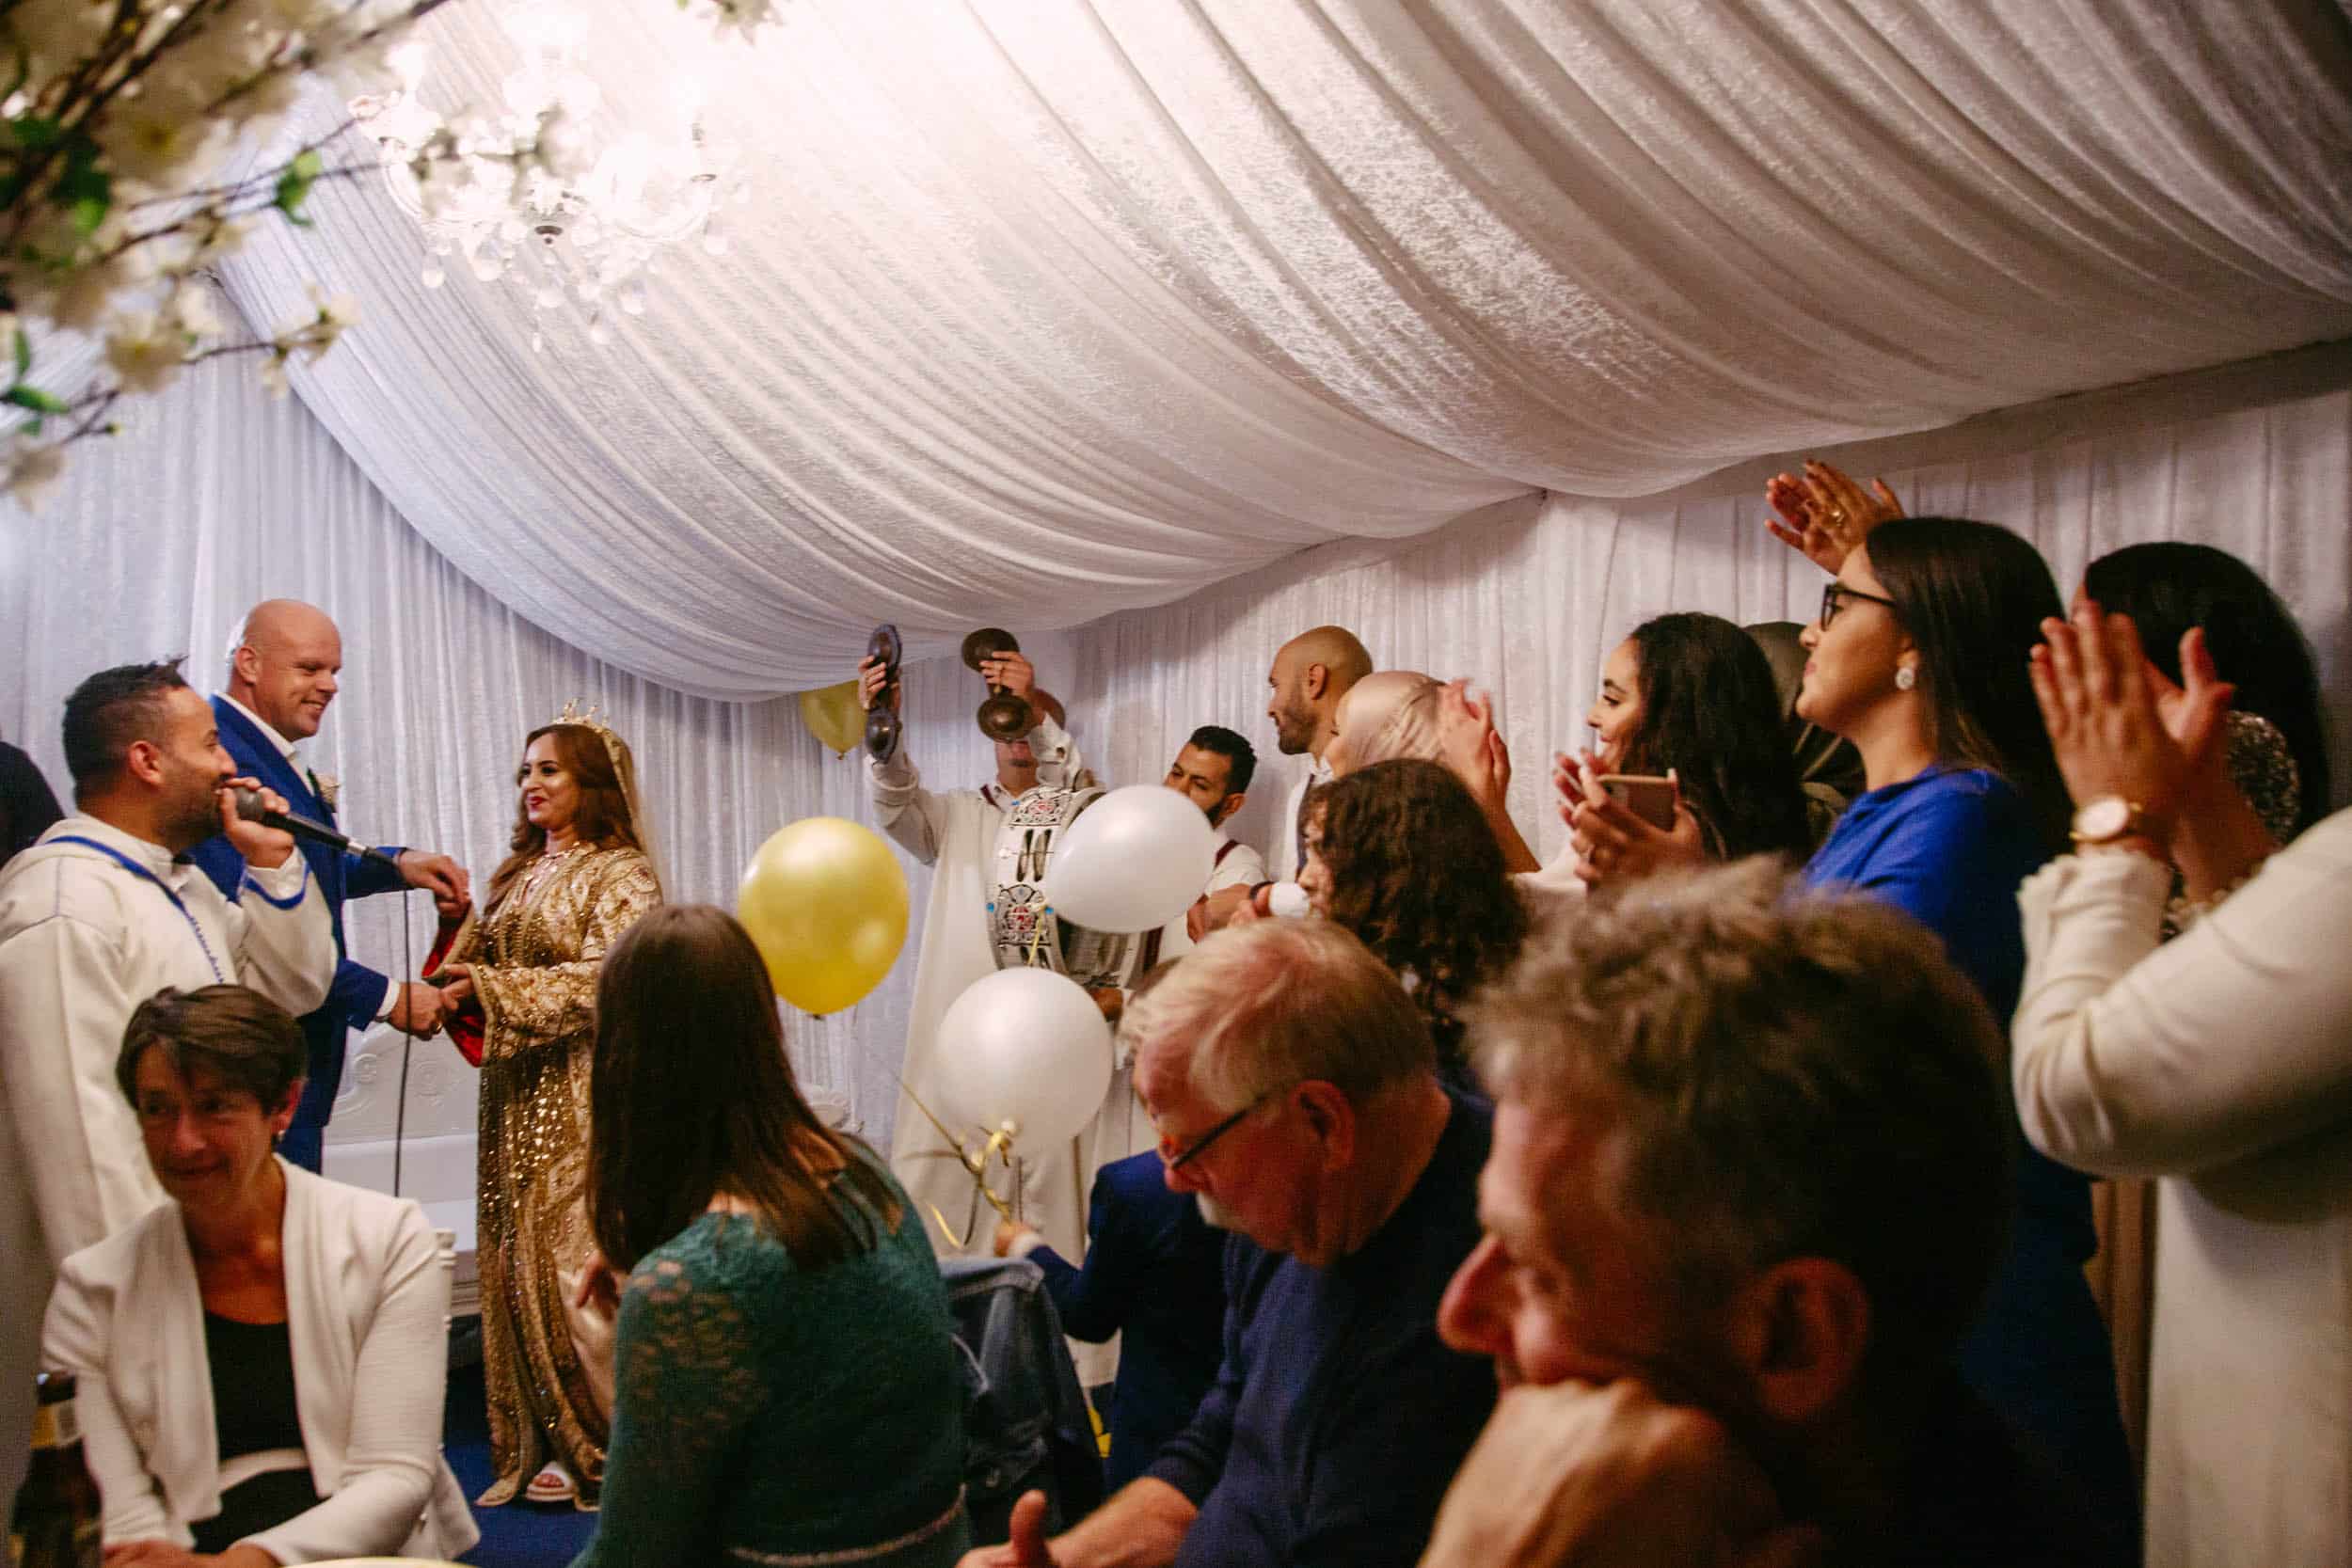 Beschrijving: Een bruiloftsceremonie in een tent met mensen die applaudisseren in het thema van de bruiloft.